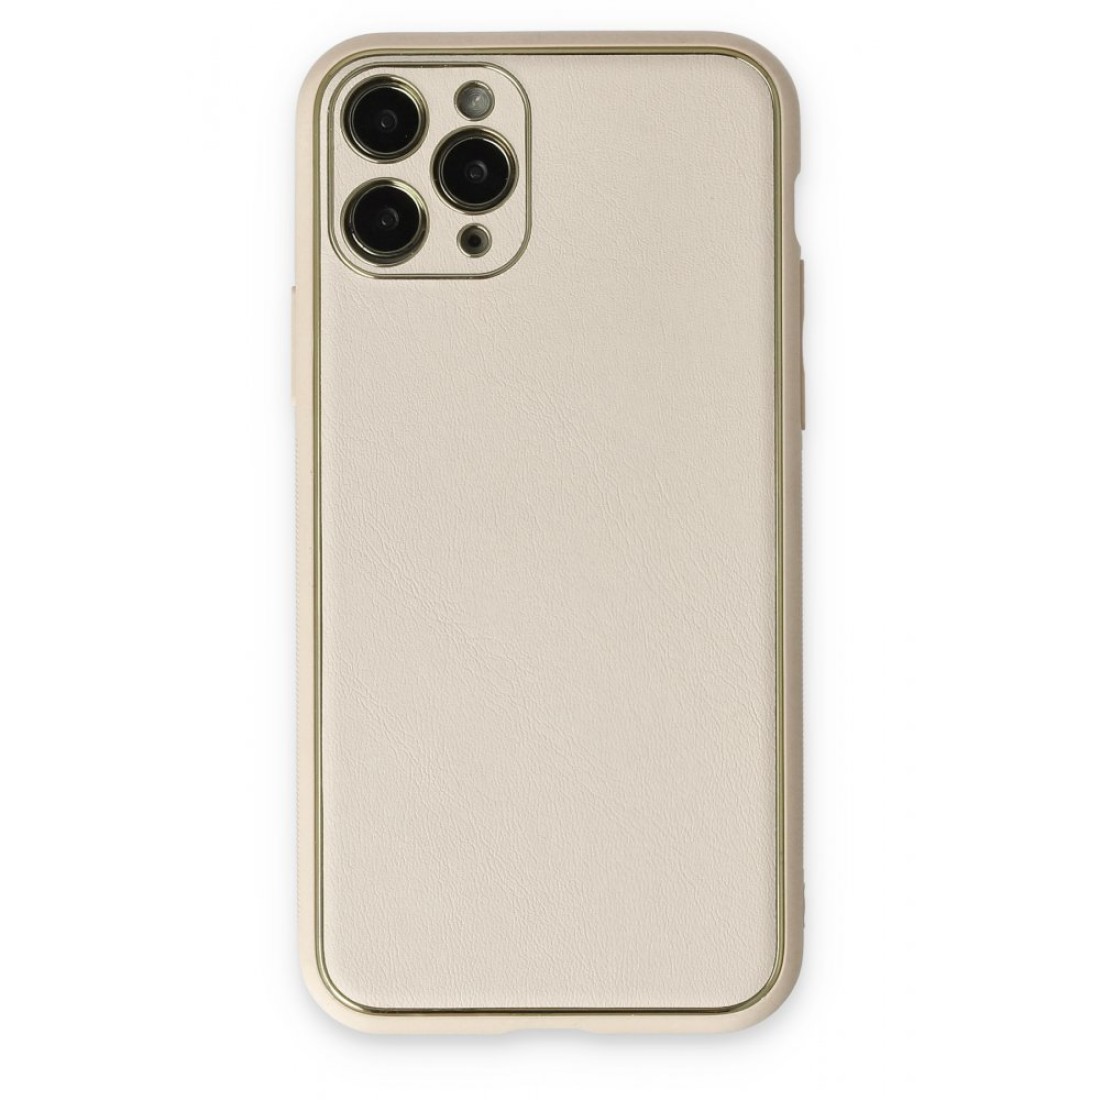 Apple iPhone 11 Pro Max Kılıf Coco Deri Silikon Kapak - Beyaz